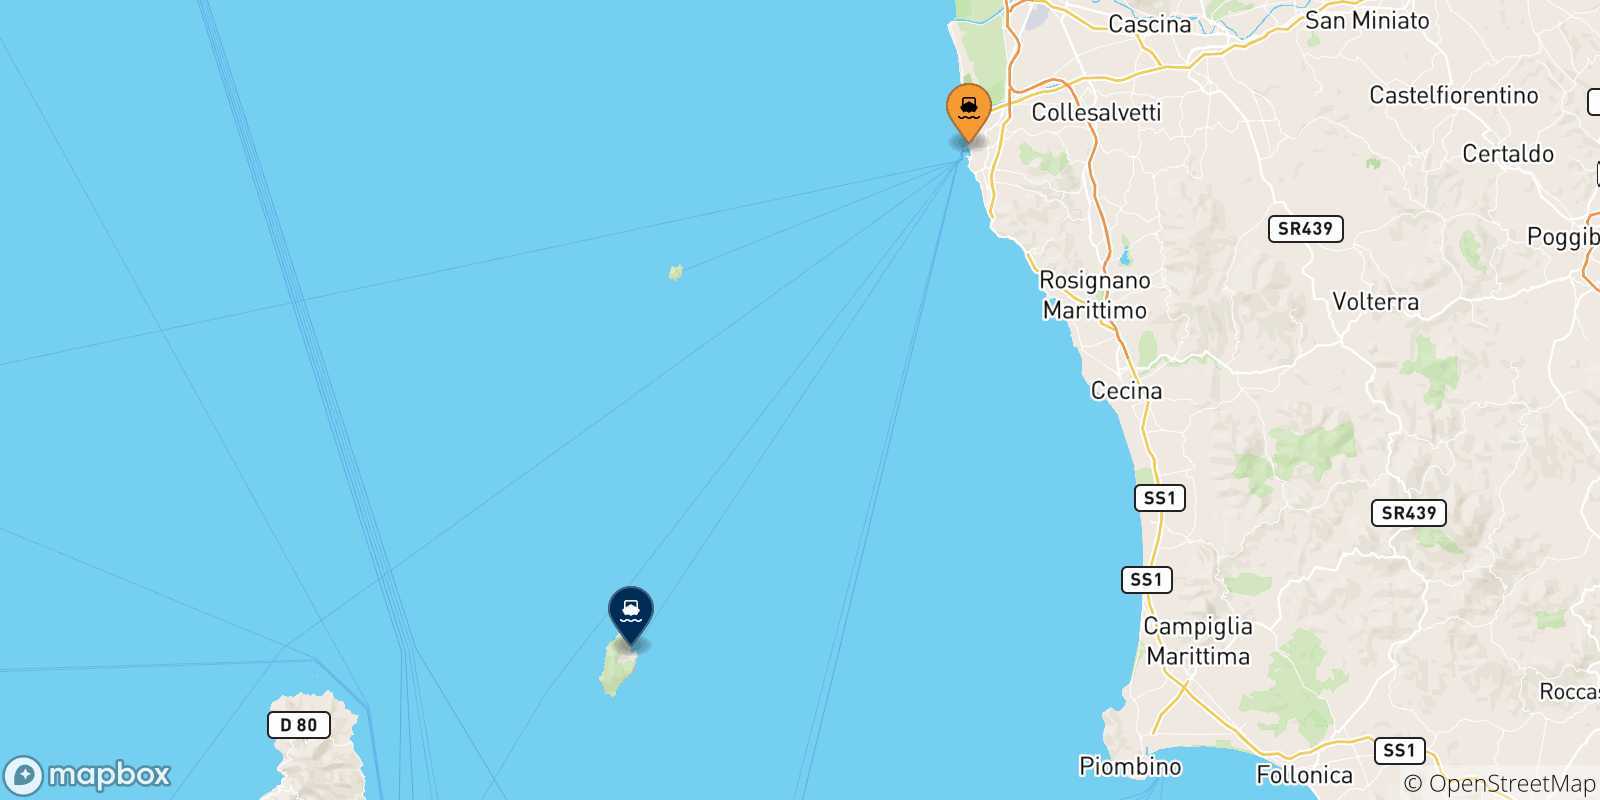 Mappa delle possibili rotte tra Livorno e l'Isola Di Capraia